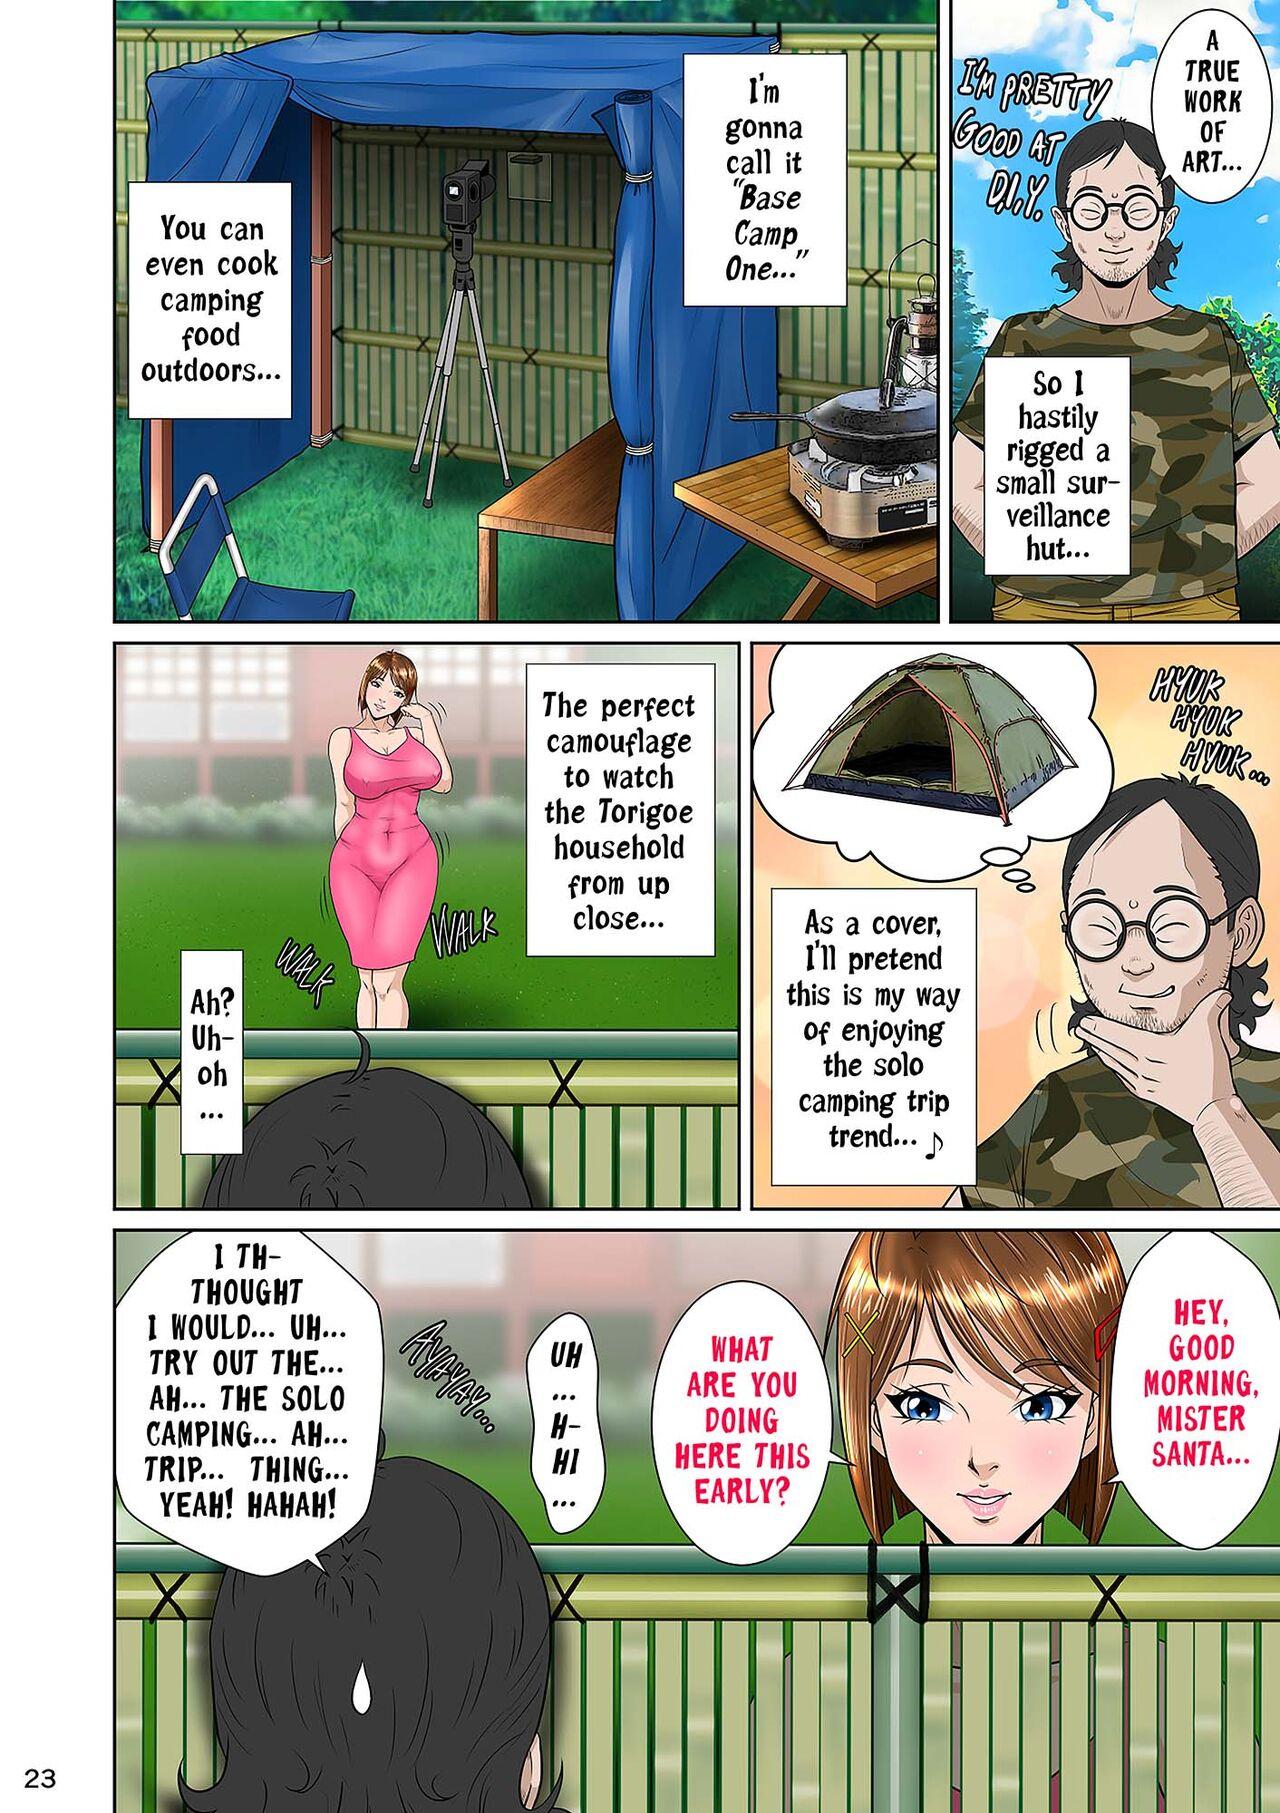 Kakine tsuma II daiichiwa | Wife on the Fence II - Chapter 3 32